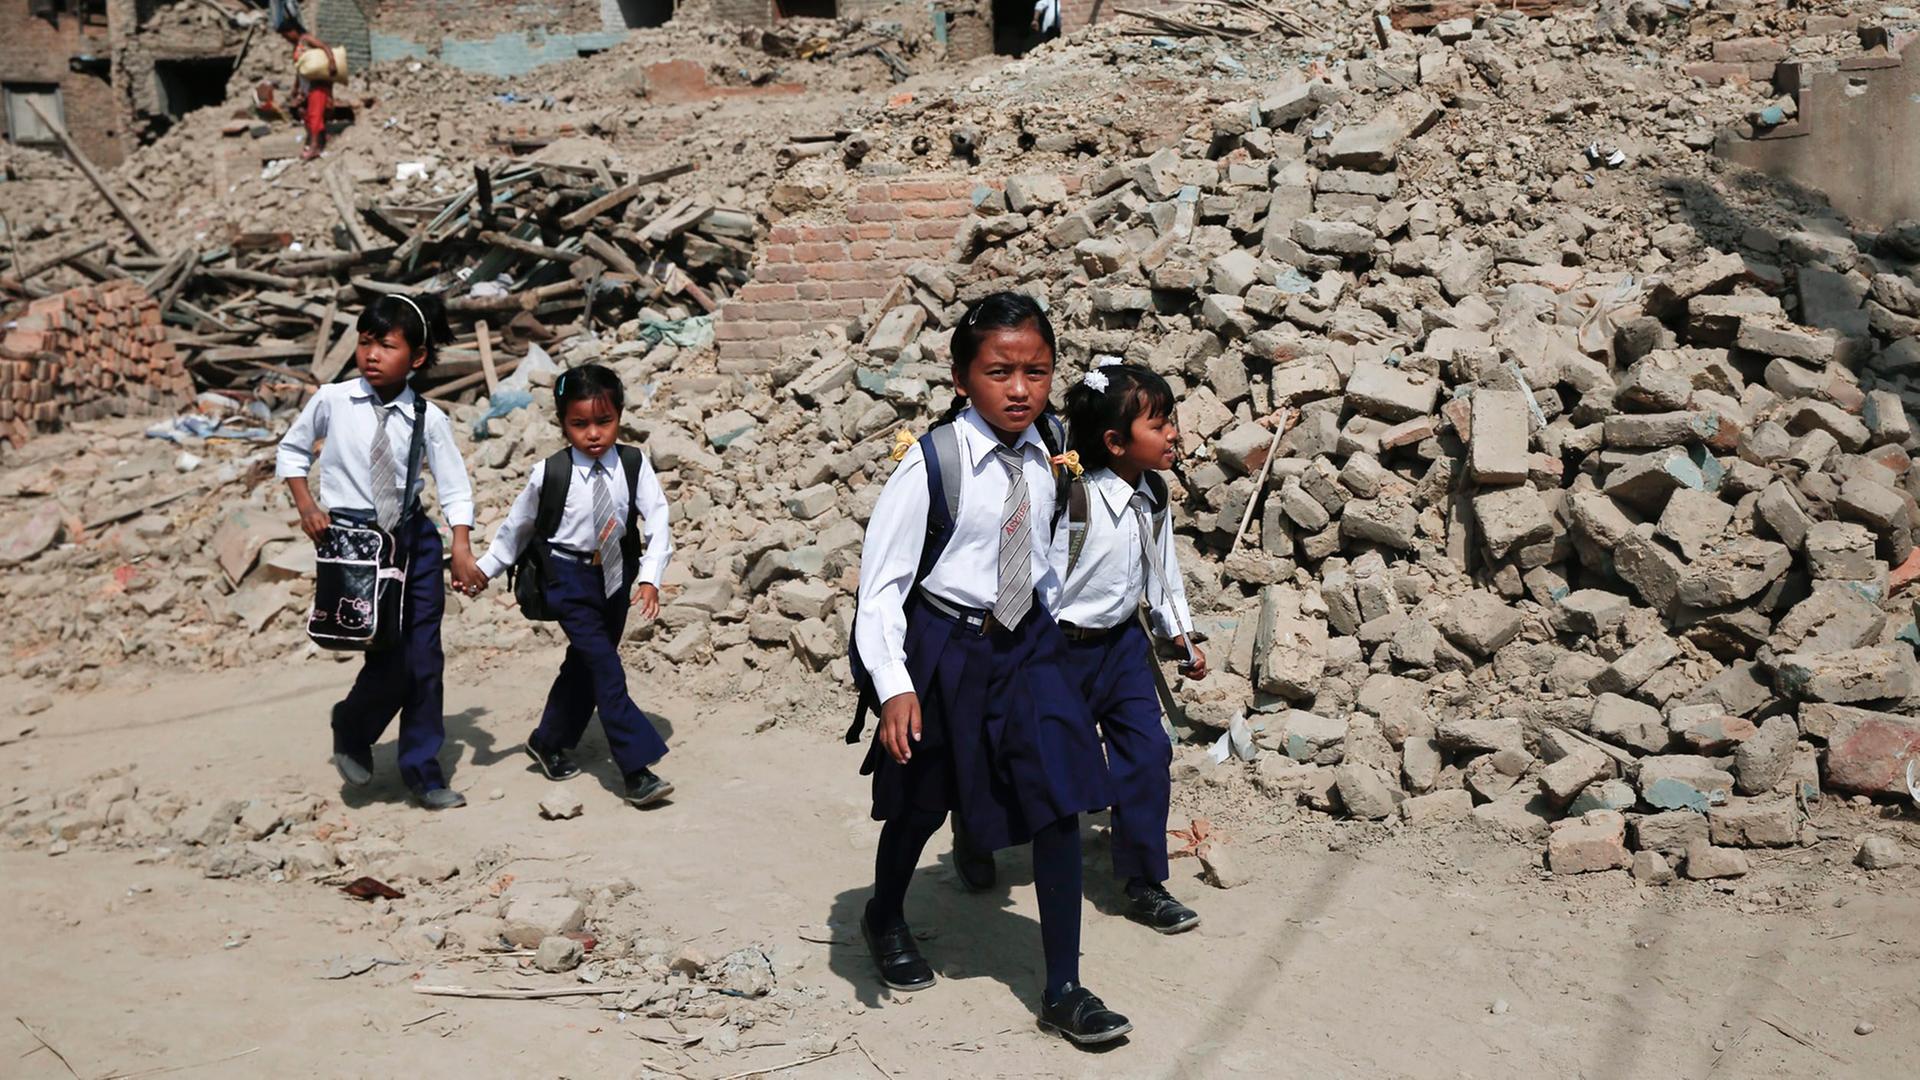 Kinder in Nepal auf dem Weg zur Schule. Die Kinder tragen eine Schul-Uniform. Sie laufen an einem zerstörten Haus vorbei.